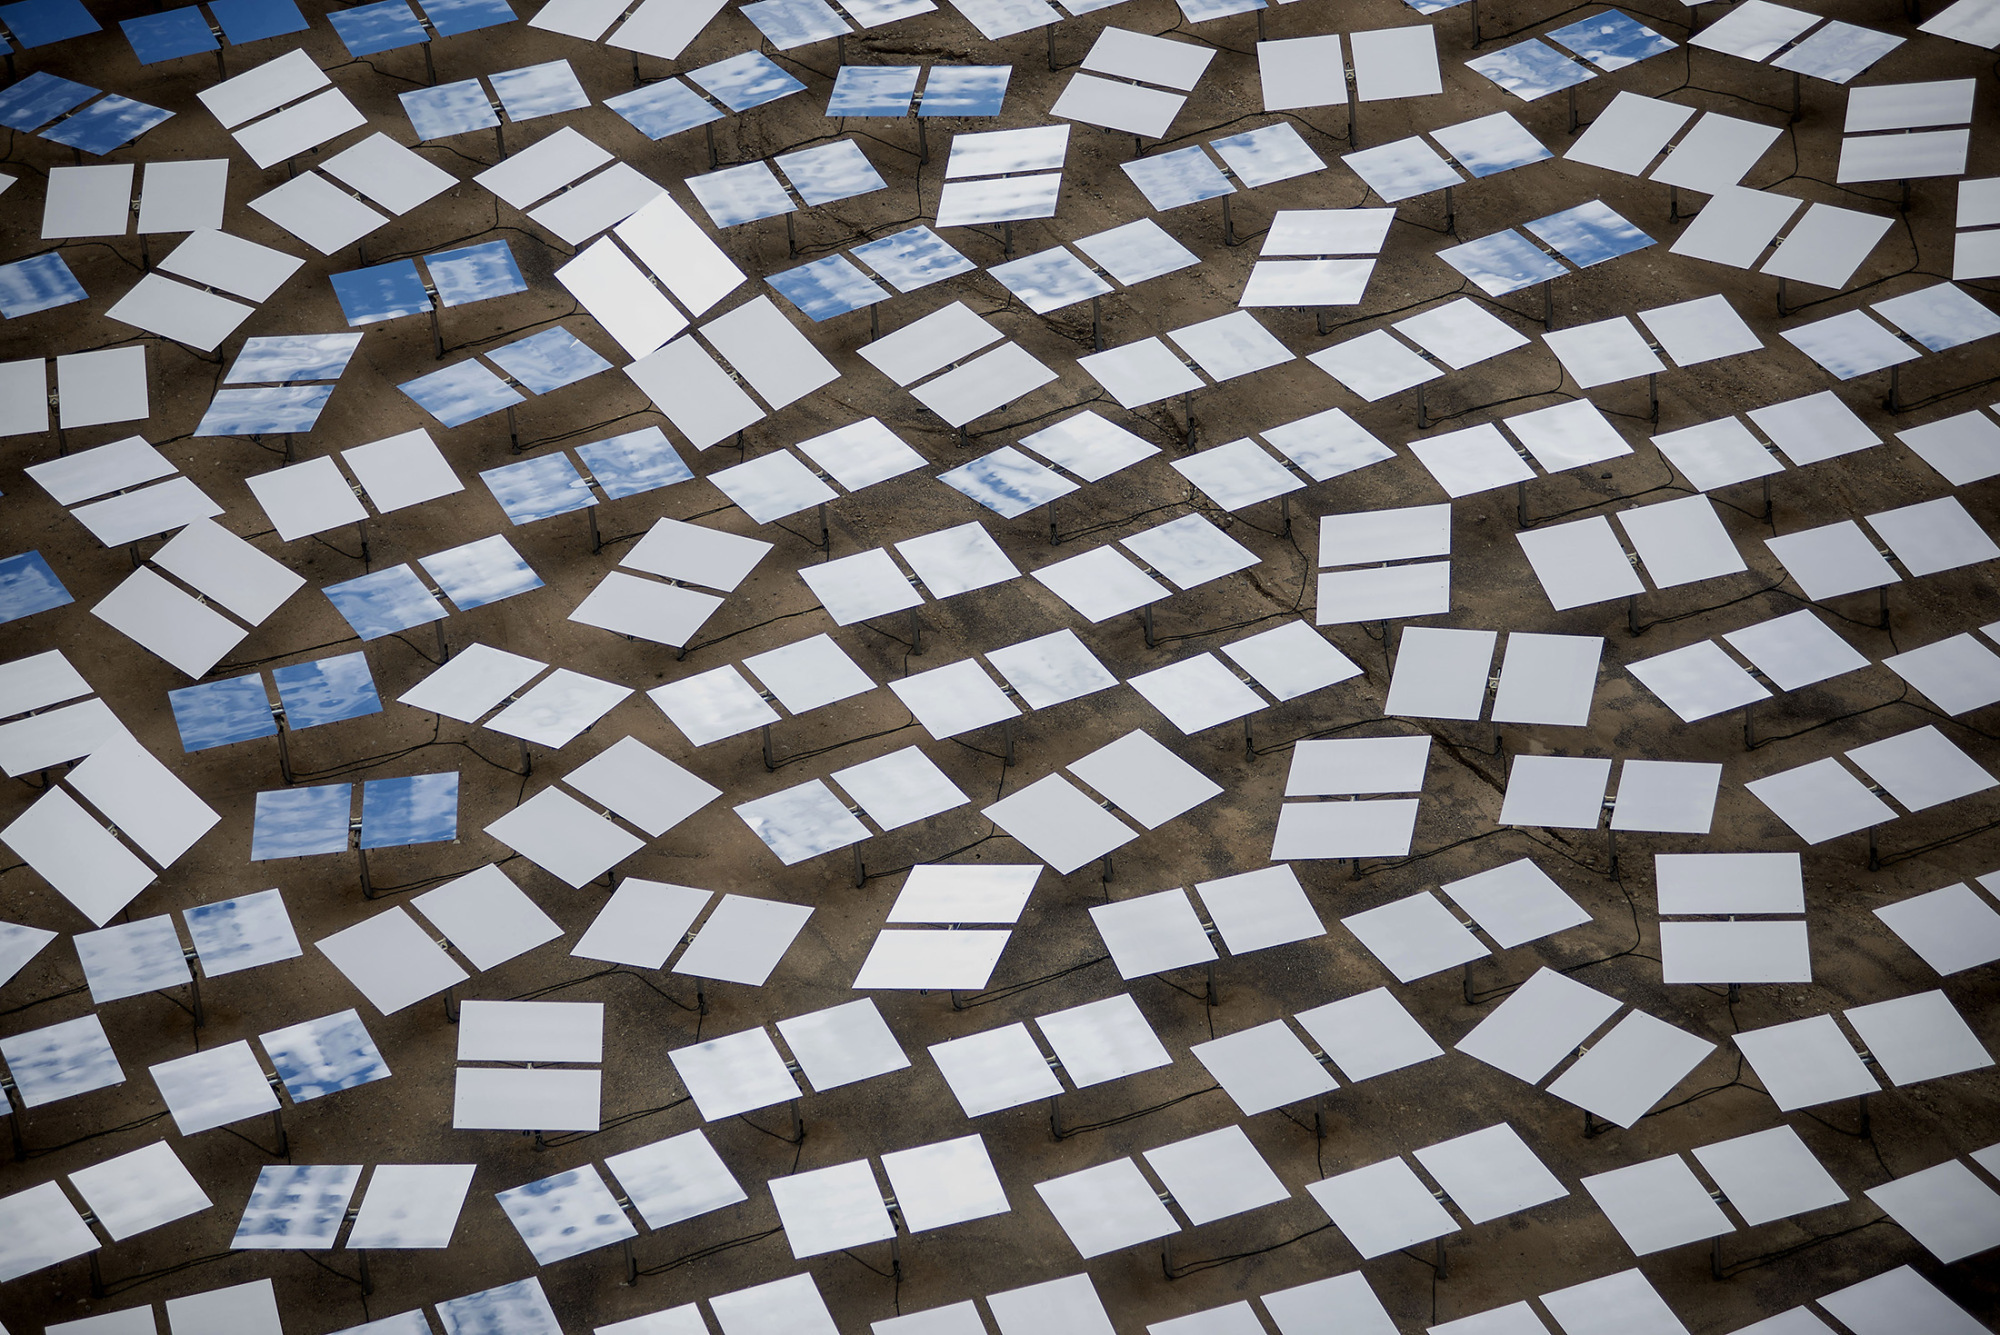 Solar news. Photographer: Jacob Kepler/Bloomberg